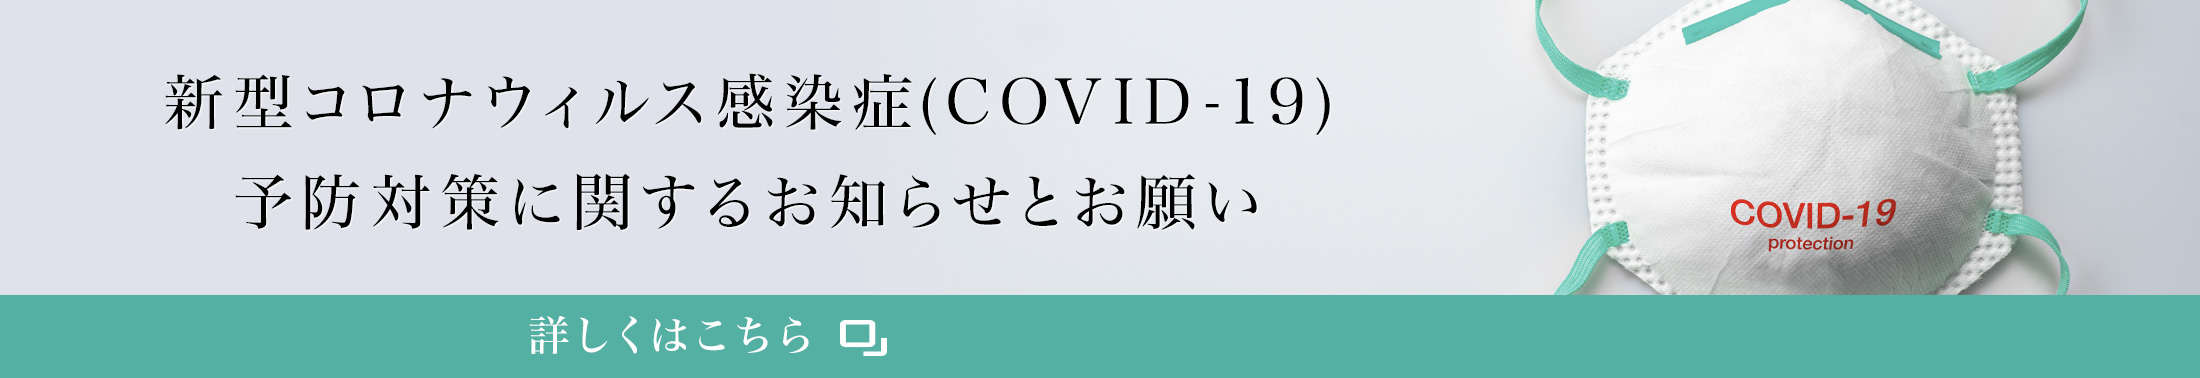 新型コロナウィルス感染症(COVID-19)予防対策に関するお知らせとお願い